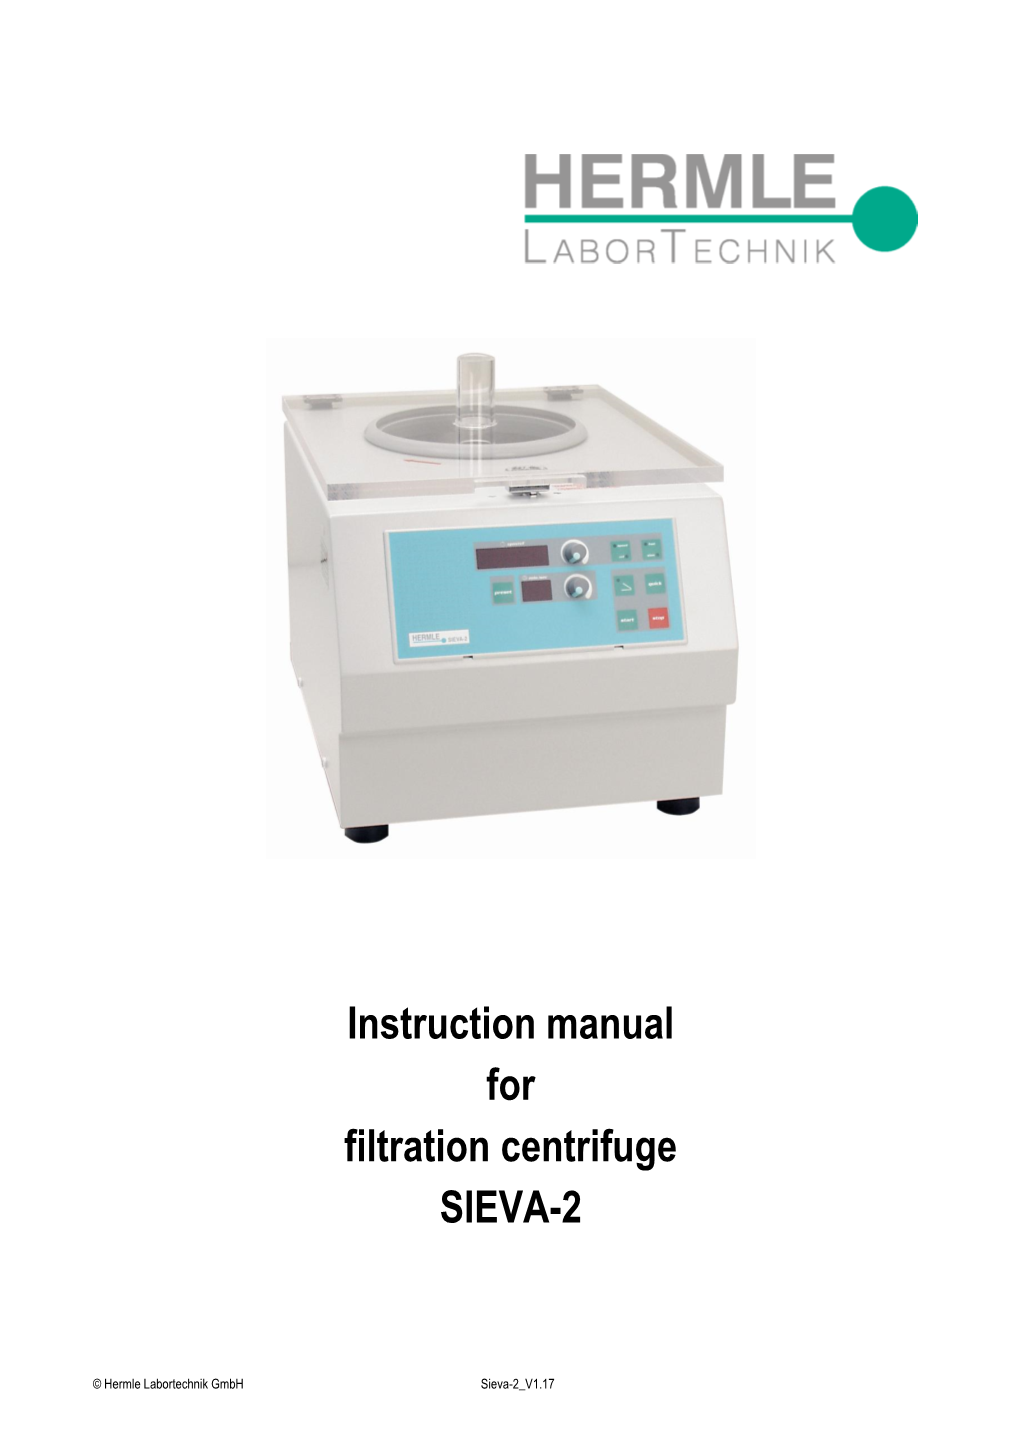 Instruction Manual for Filtration Centrifuge SIEVA-2